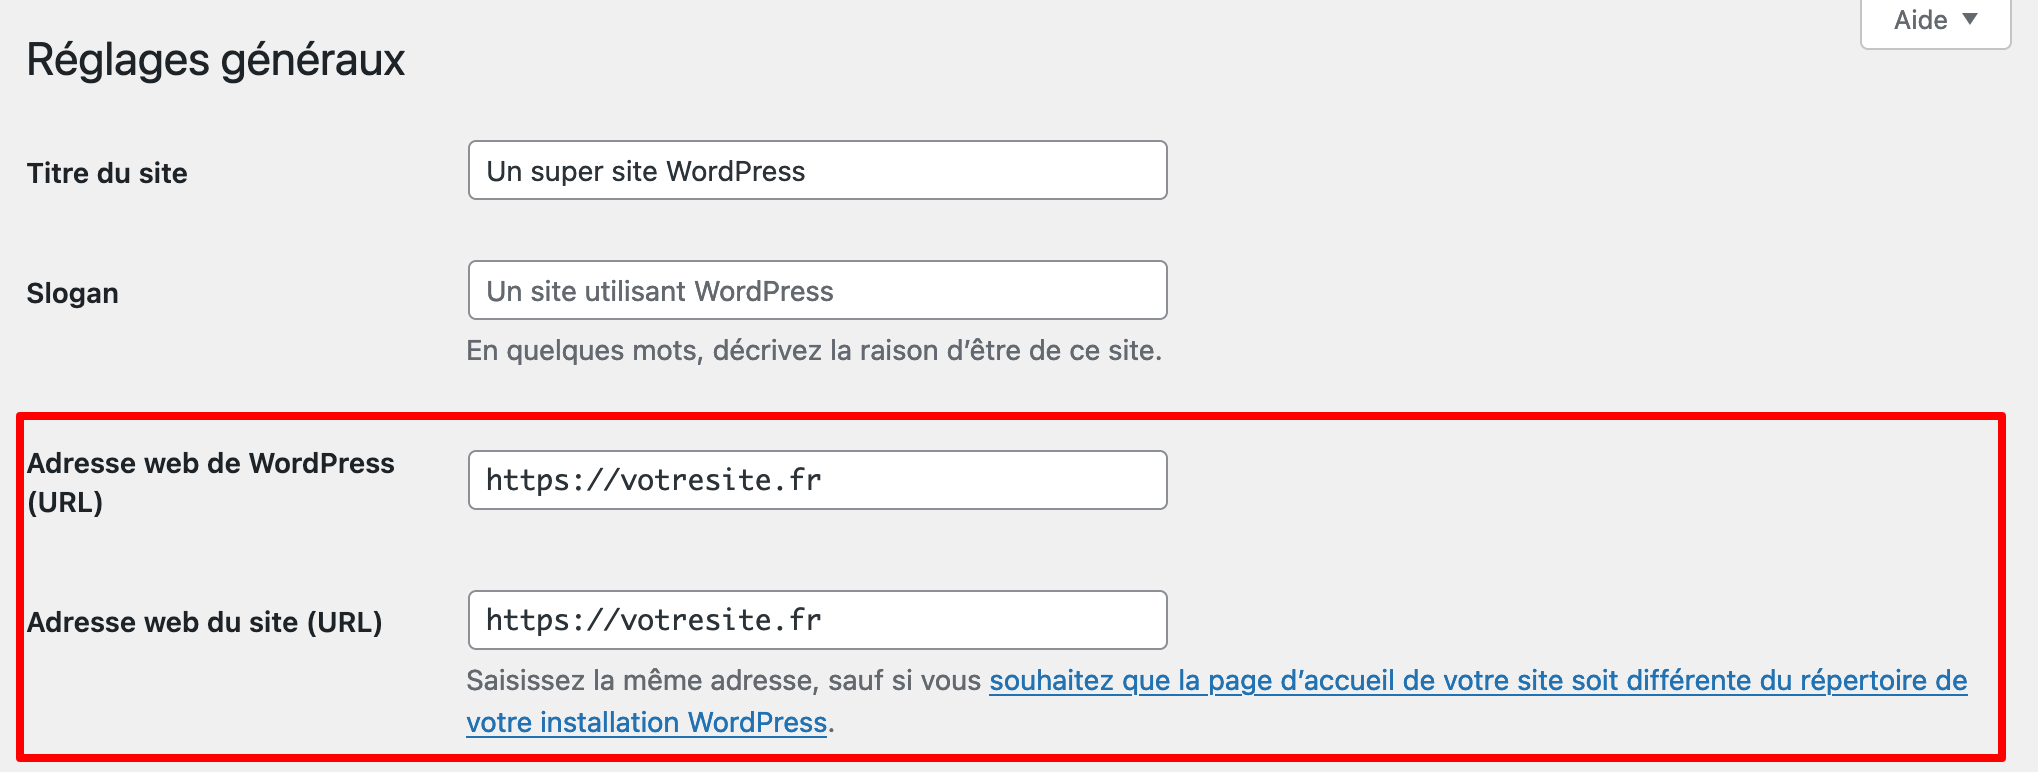 Changer l'URL d'un site WordPress implique de modifier son adresse web.